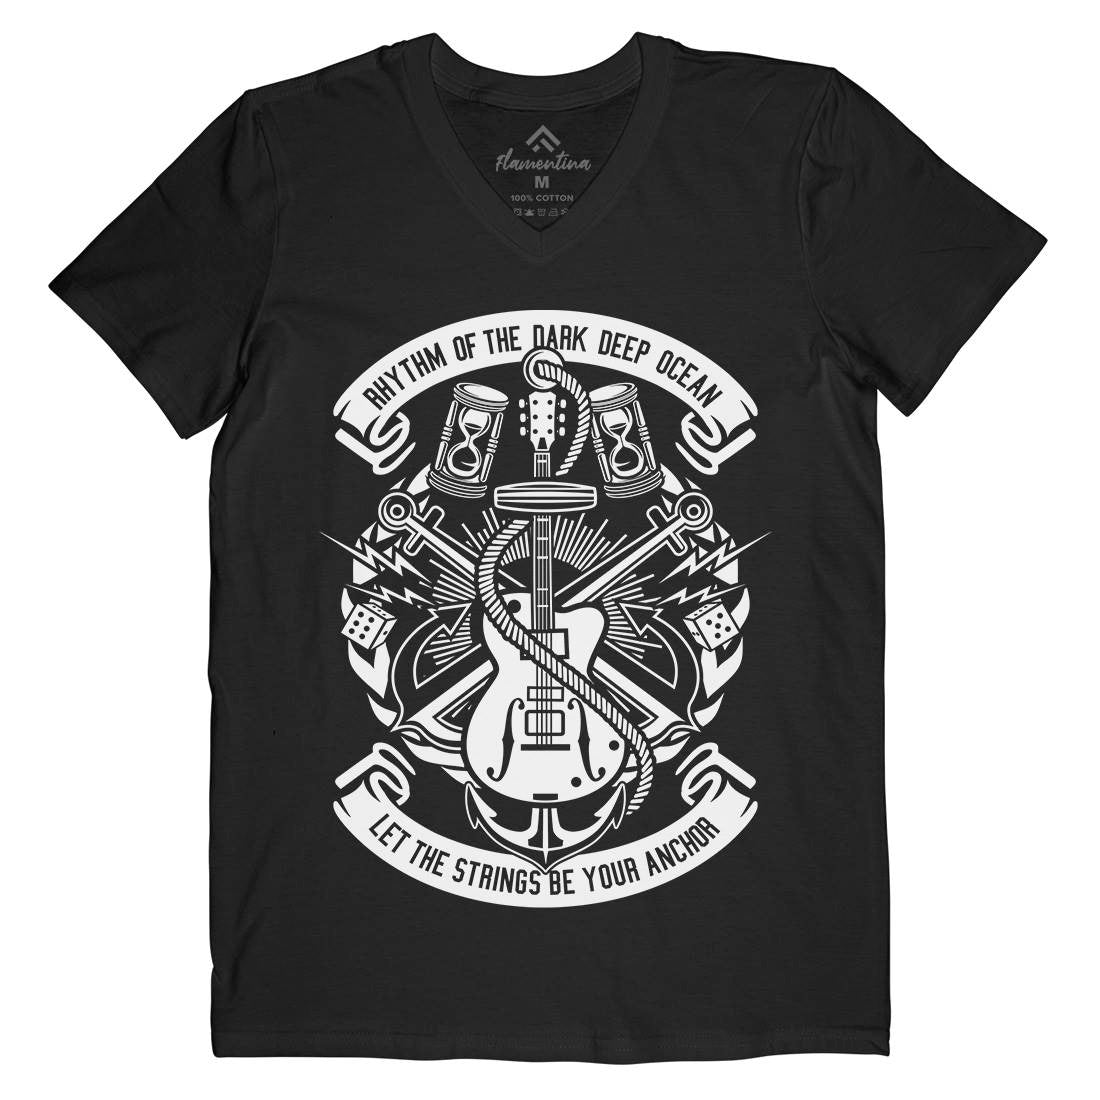 Rhythm Of Dark Ocean Mens V-Neck T-Shirt Navy B611